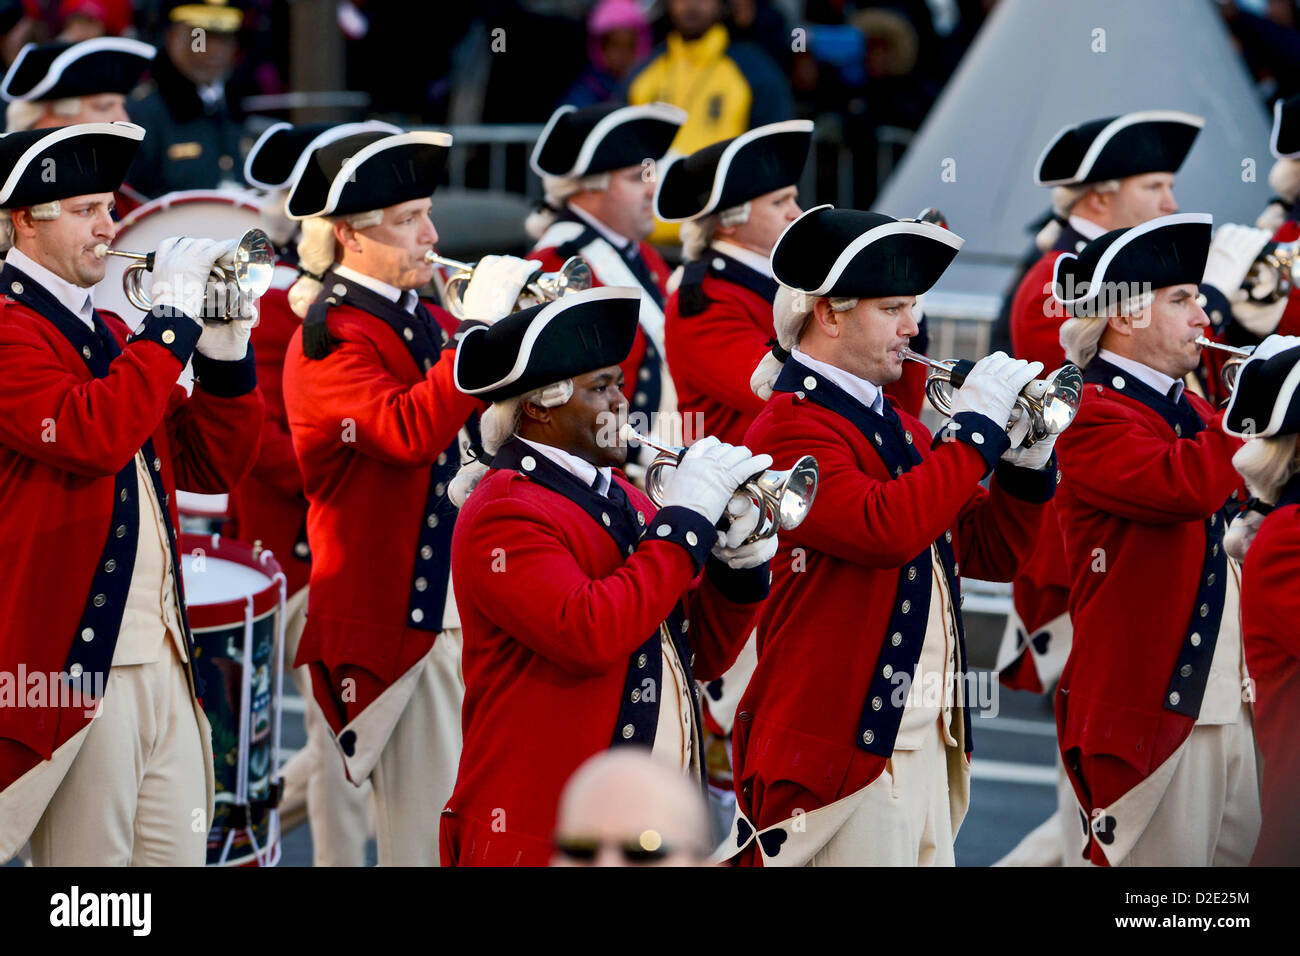 Die Armee alte Garde Fife und Drum Corps Märsche in der Einweihung-Parade für die 57. Presidential Inauguration Zeremonie 21. Januar 2013 in Washington, DC. Stockfoto